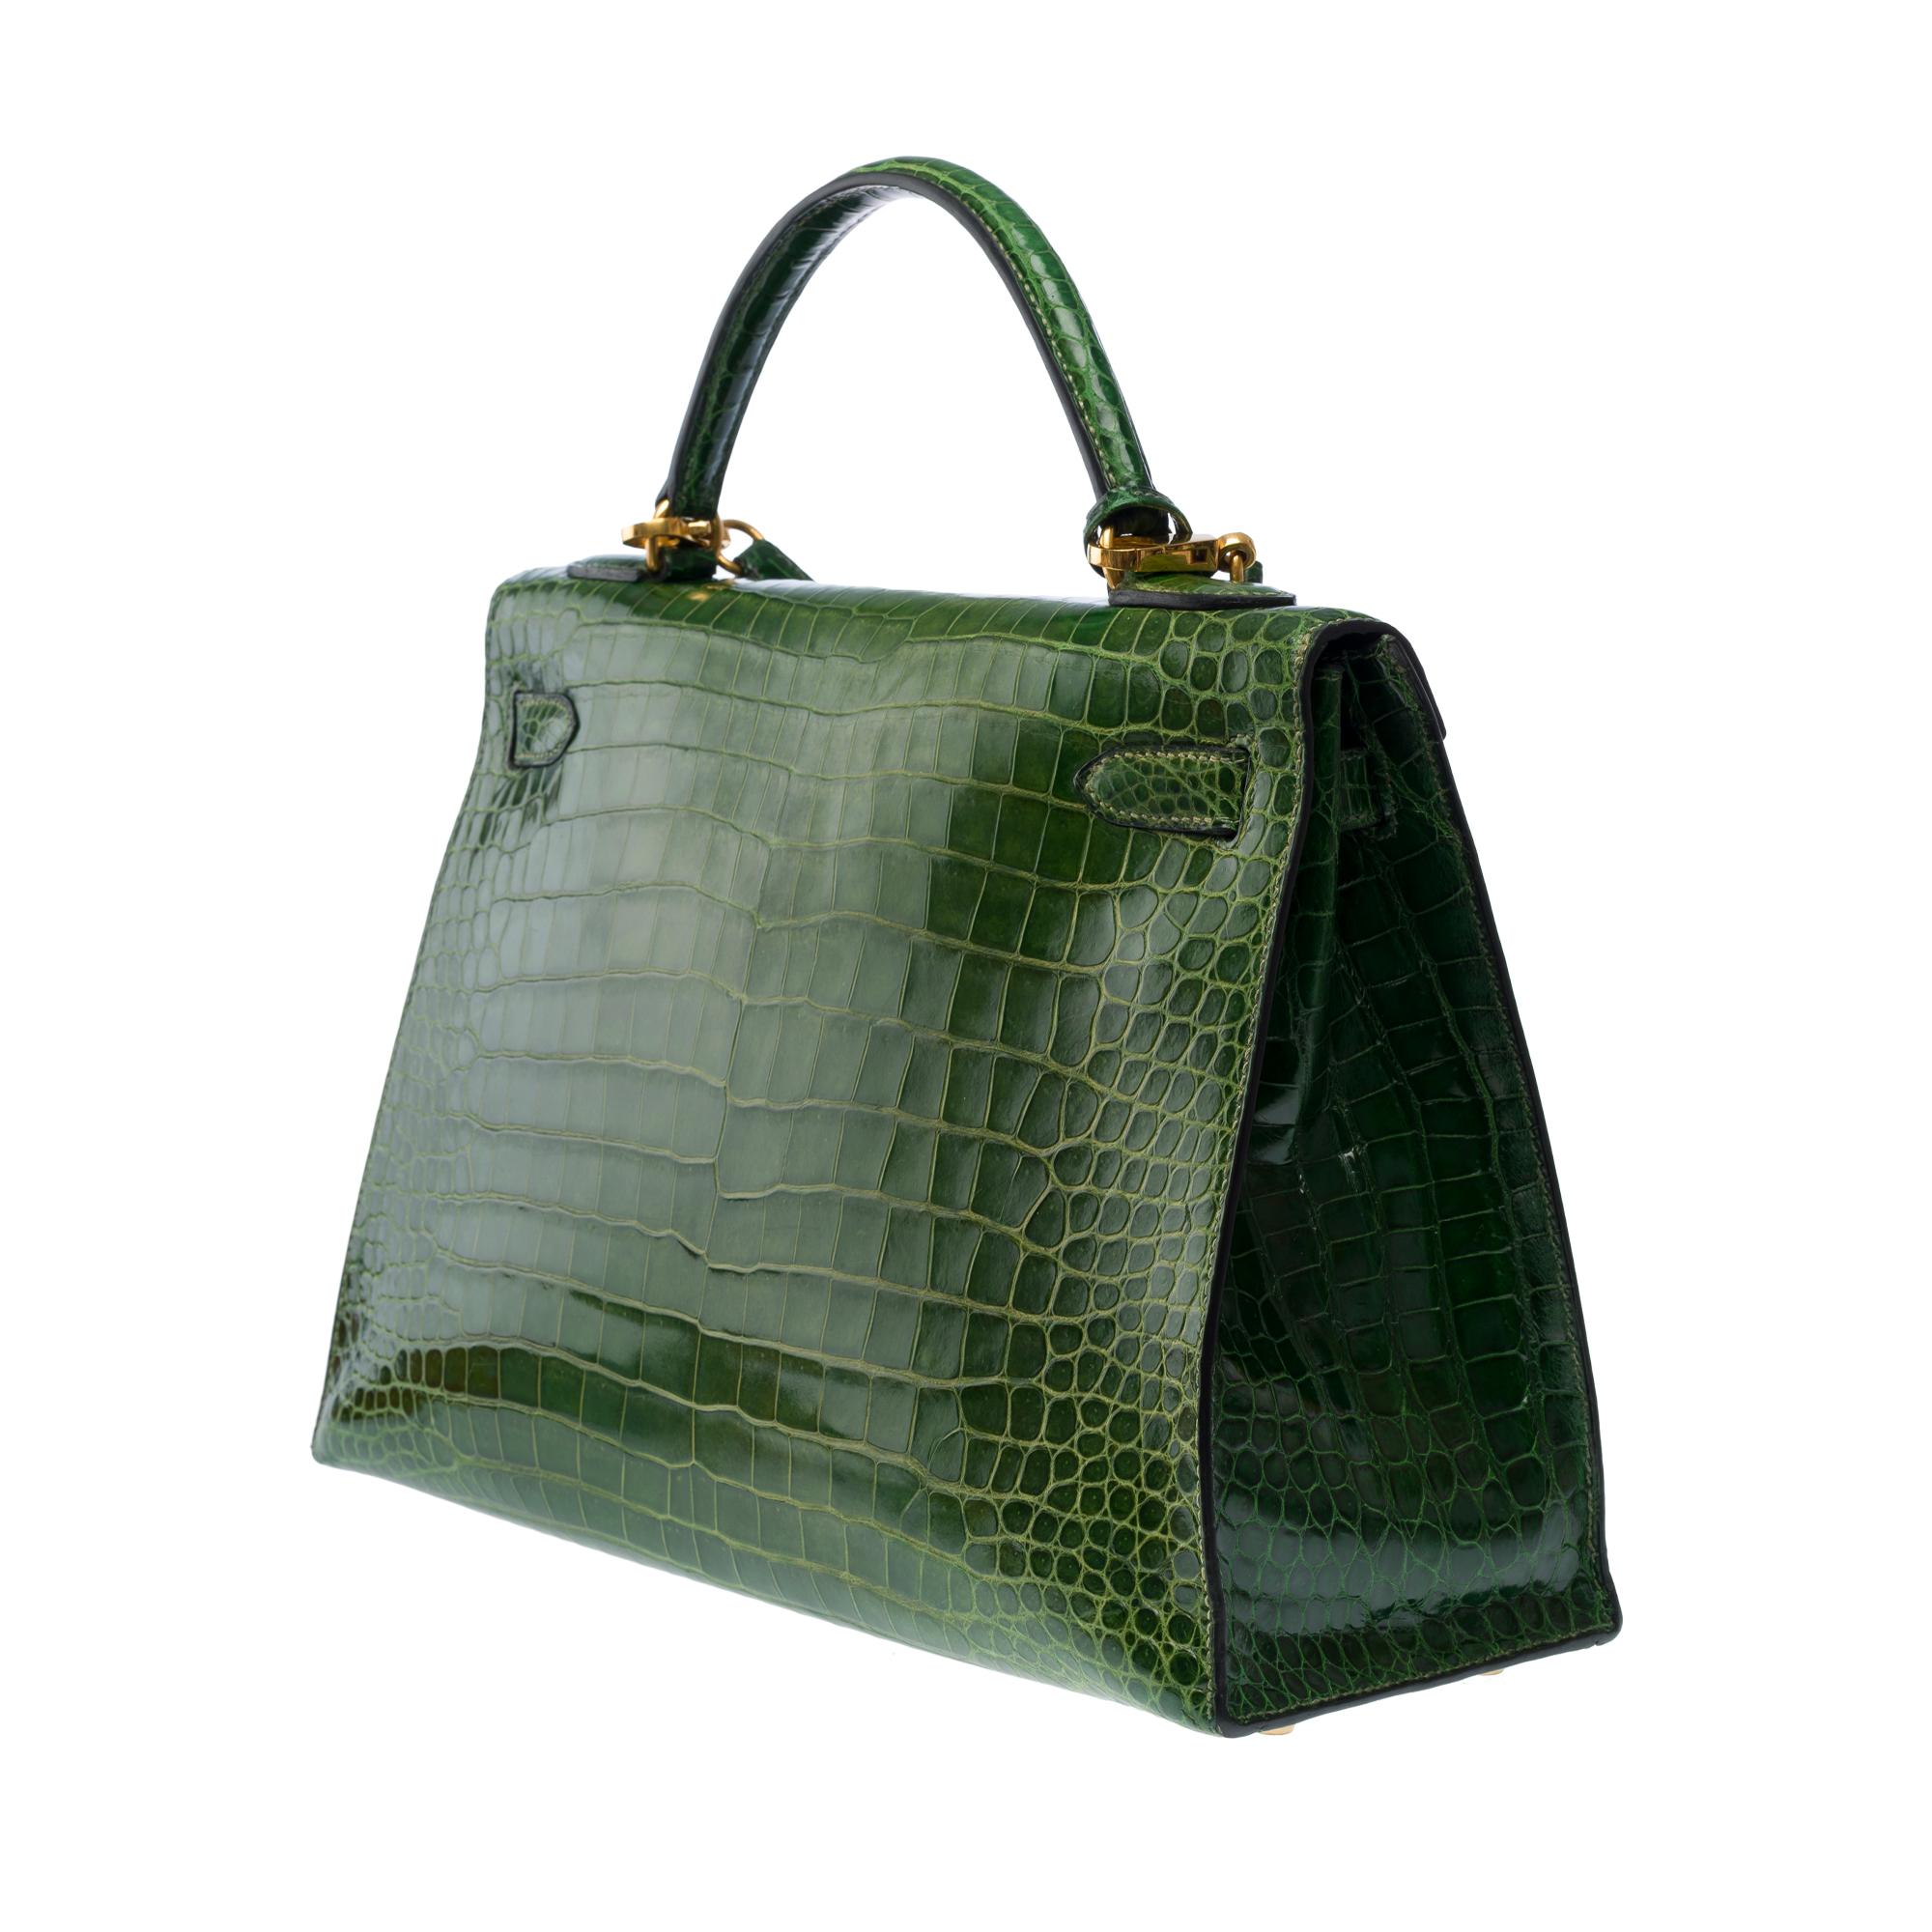 Rare Hermès Kelly 32 saddle handbag strap in Green Emerald Crocodilylus , GHW 1